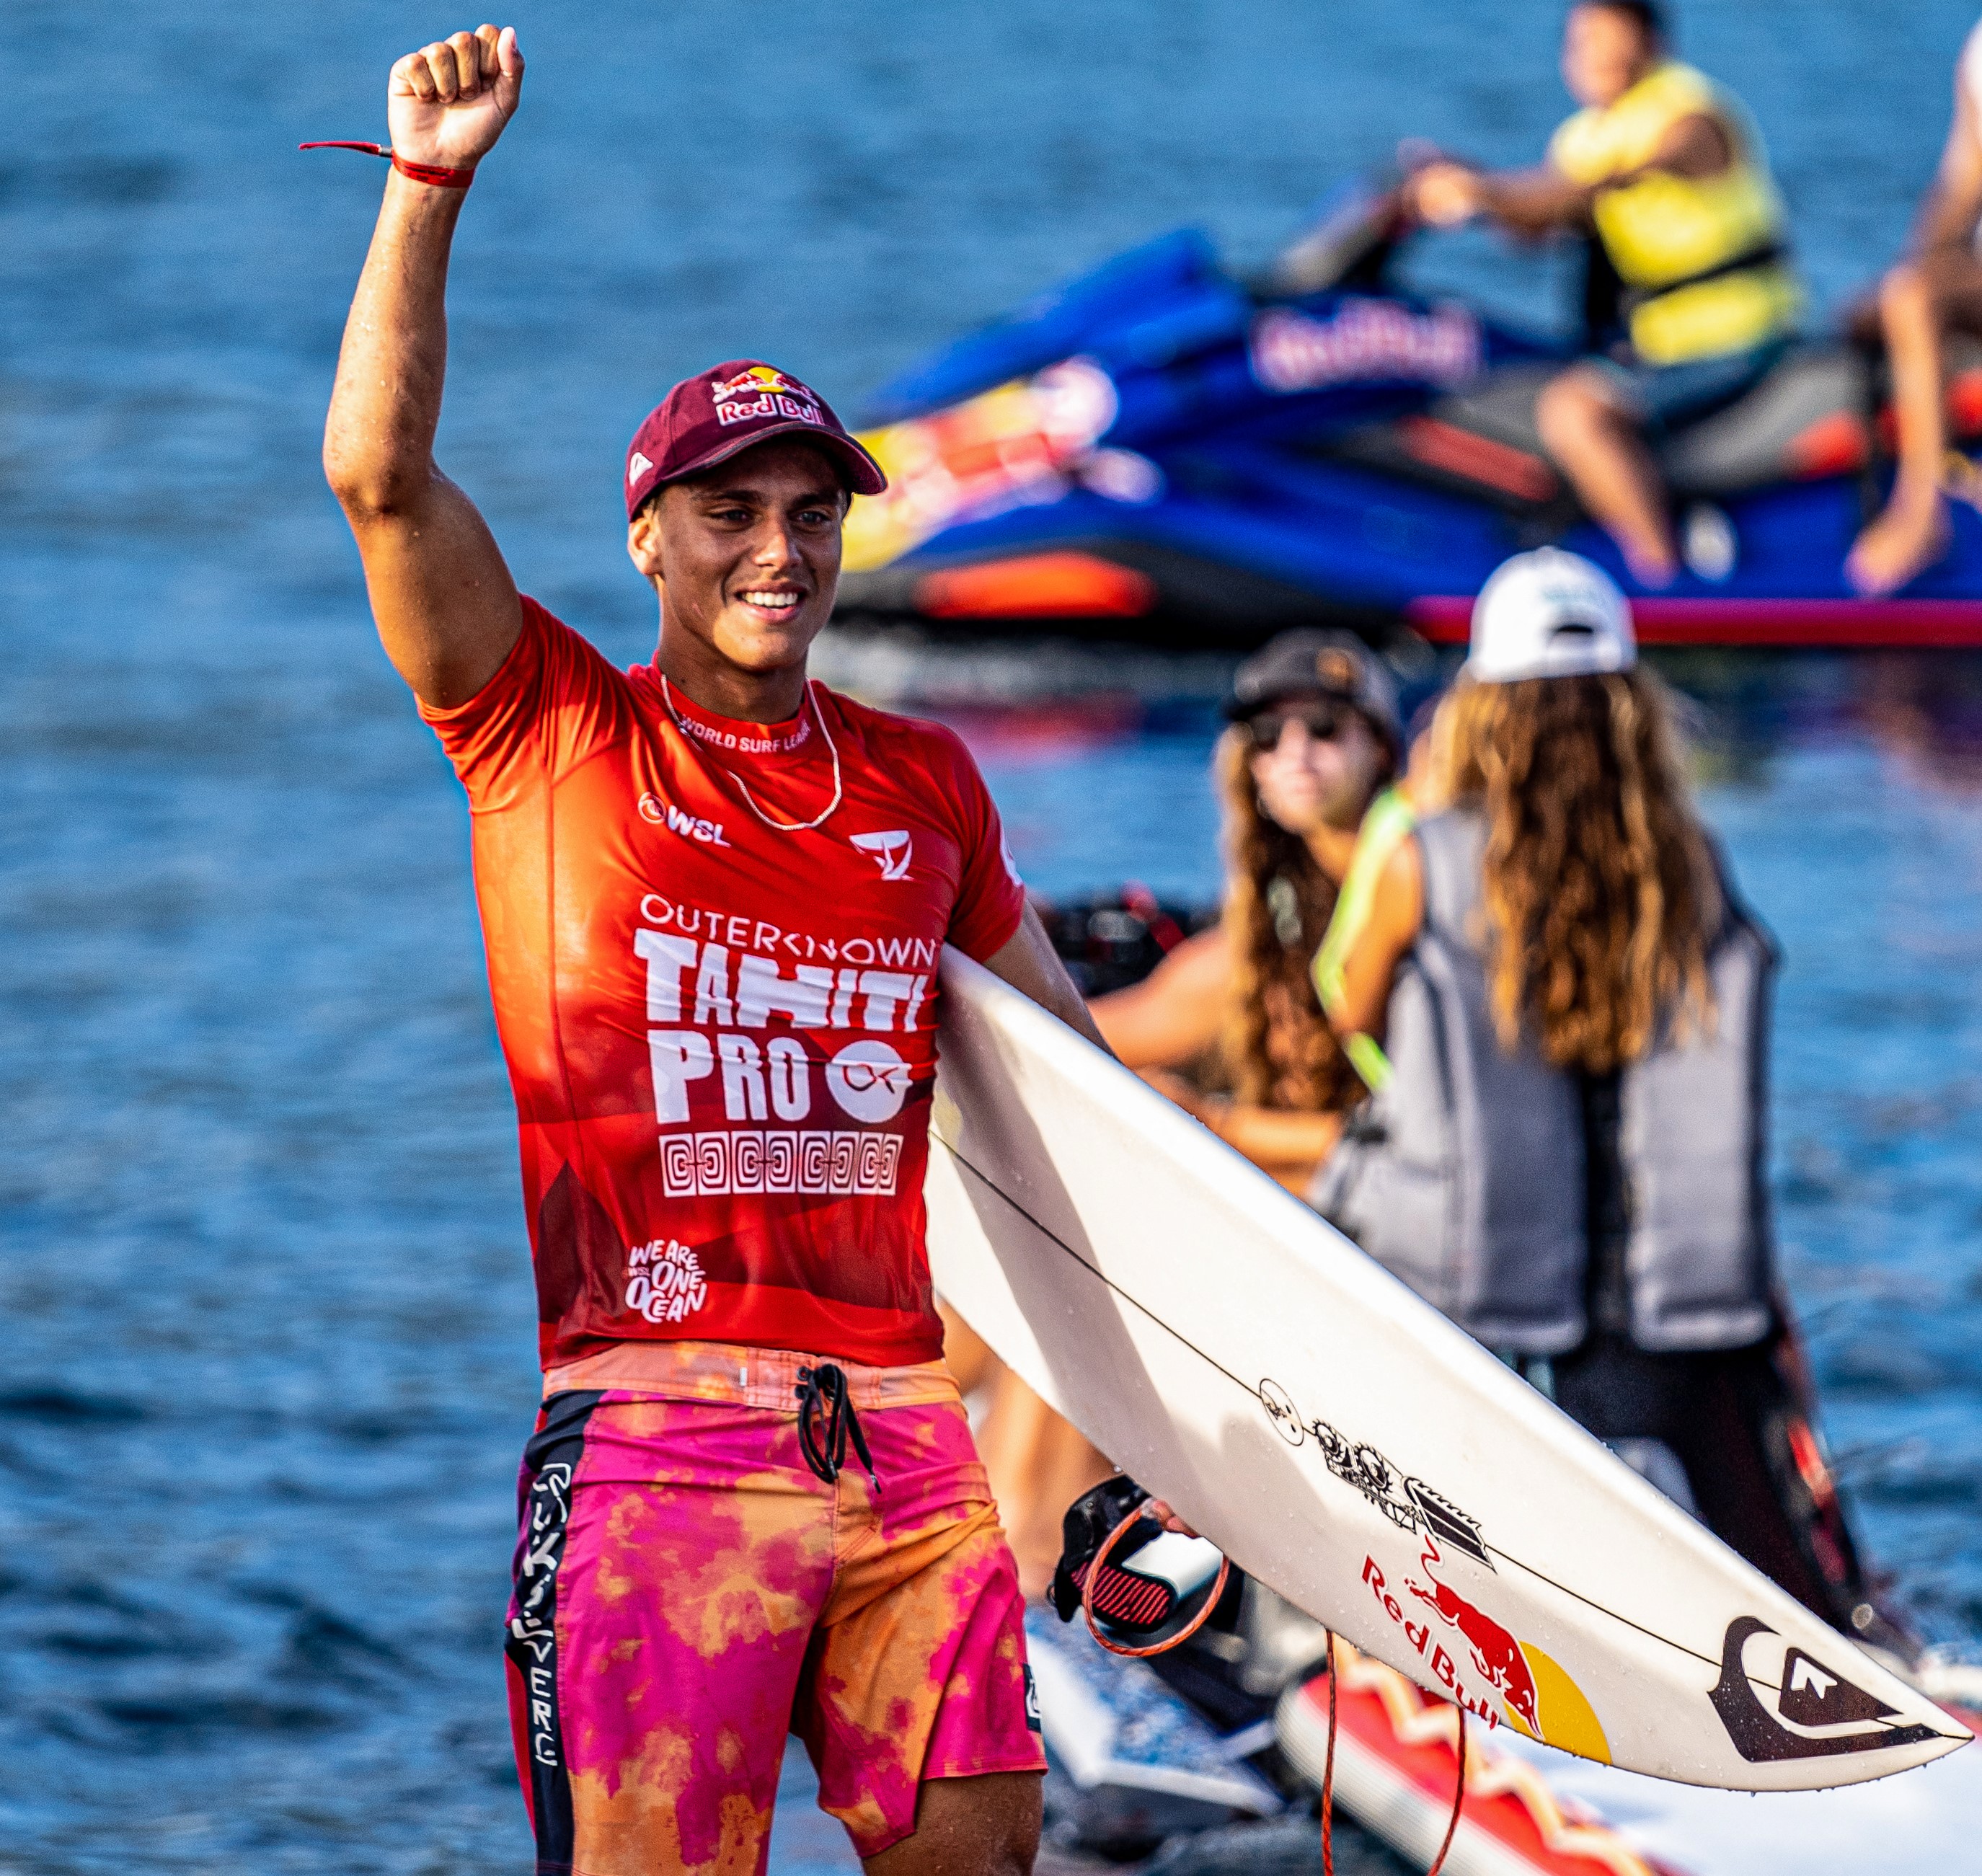 Quatre jours après sa finale au Tahiti Pro, à Teahupo'o, Kauli Vaast a retrouvé, ce mercredi, le circuit QS européen. (photo : Jerome Brouillet/AFP)